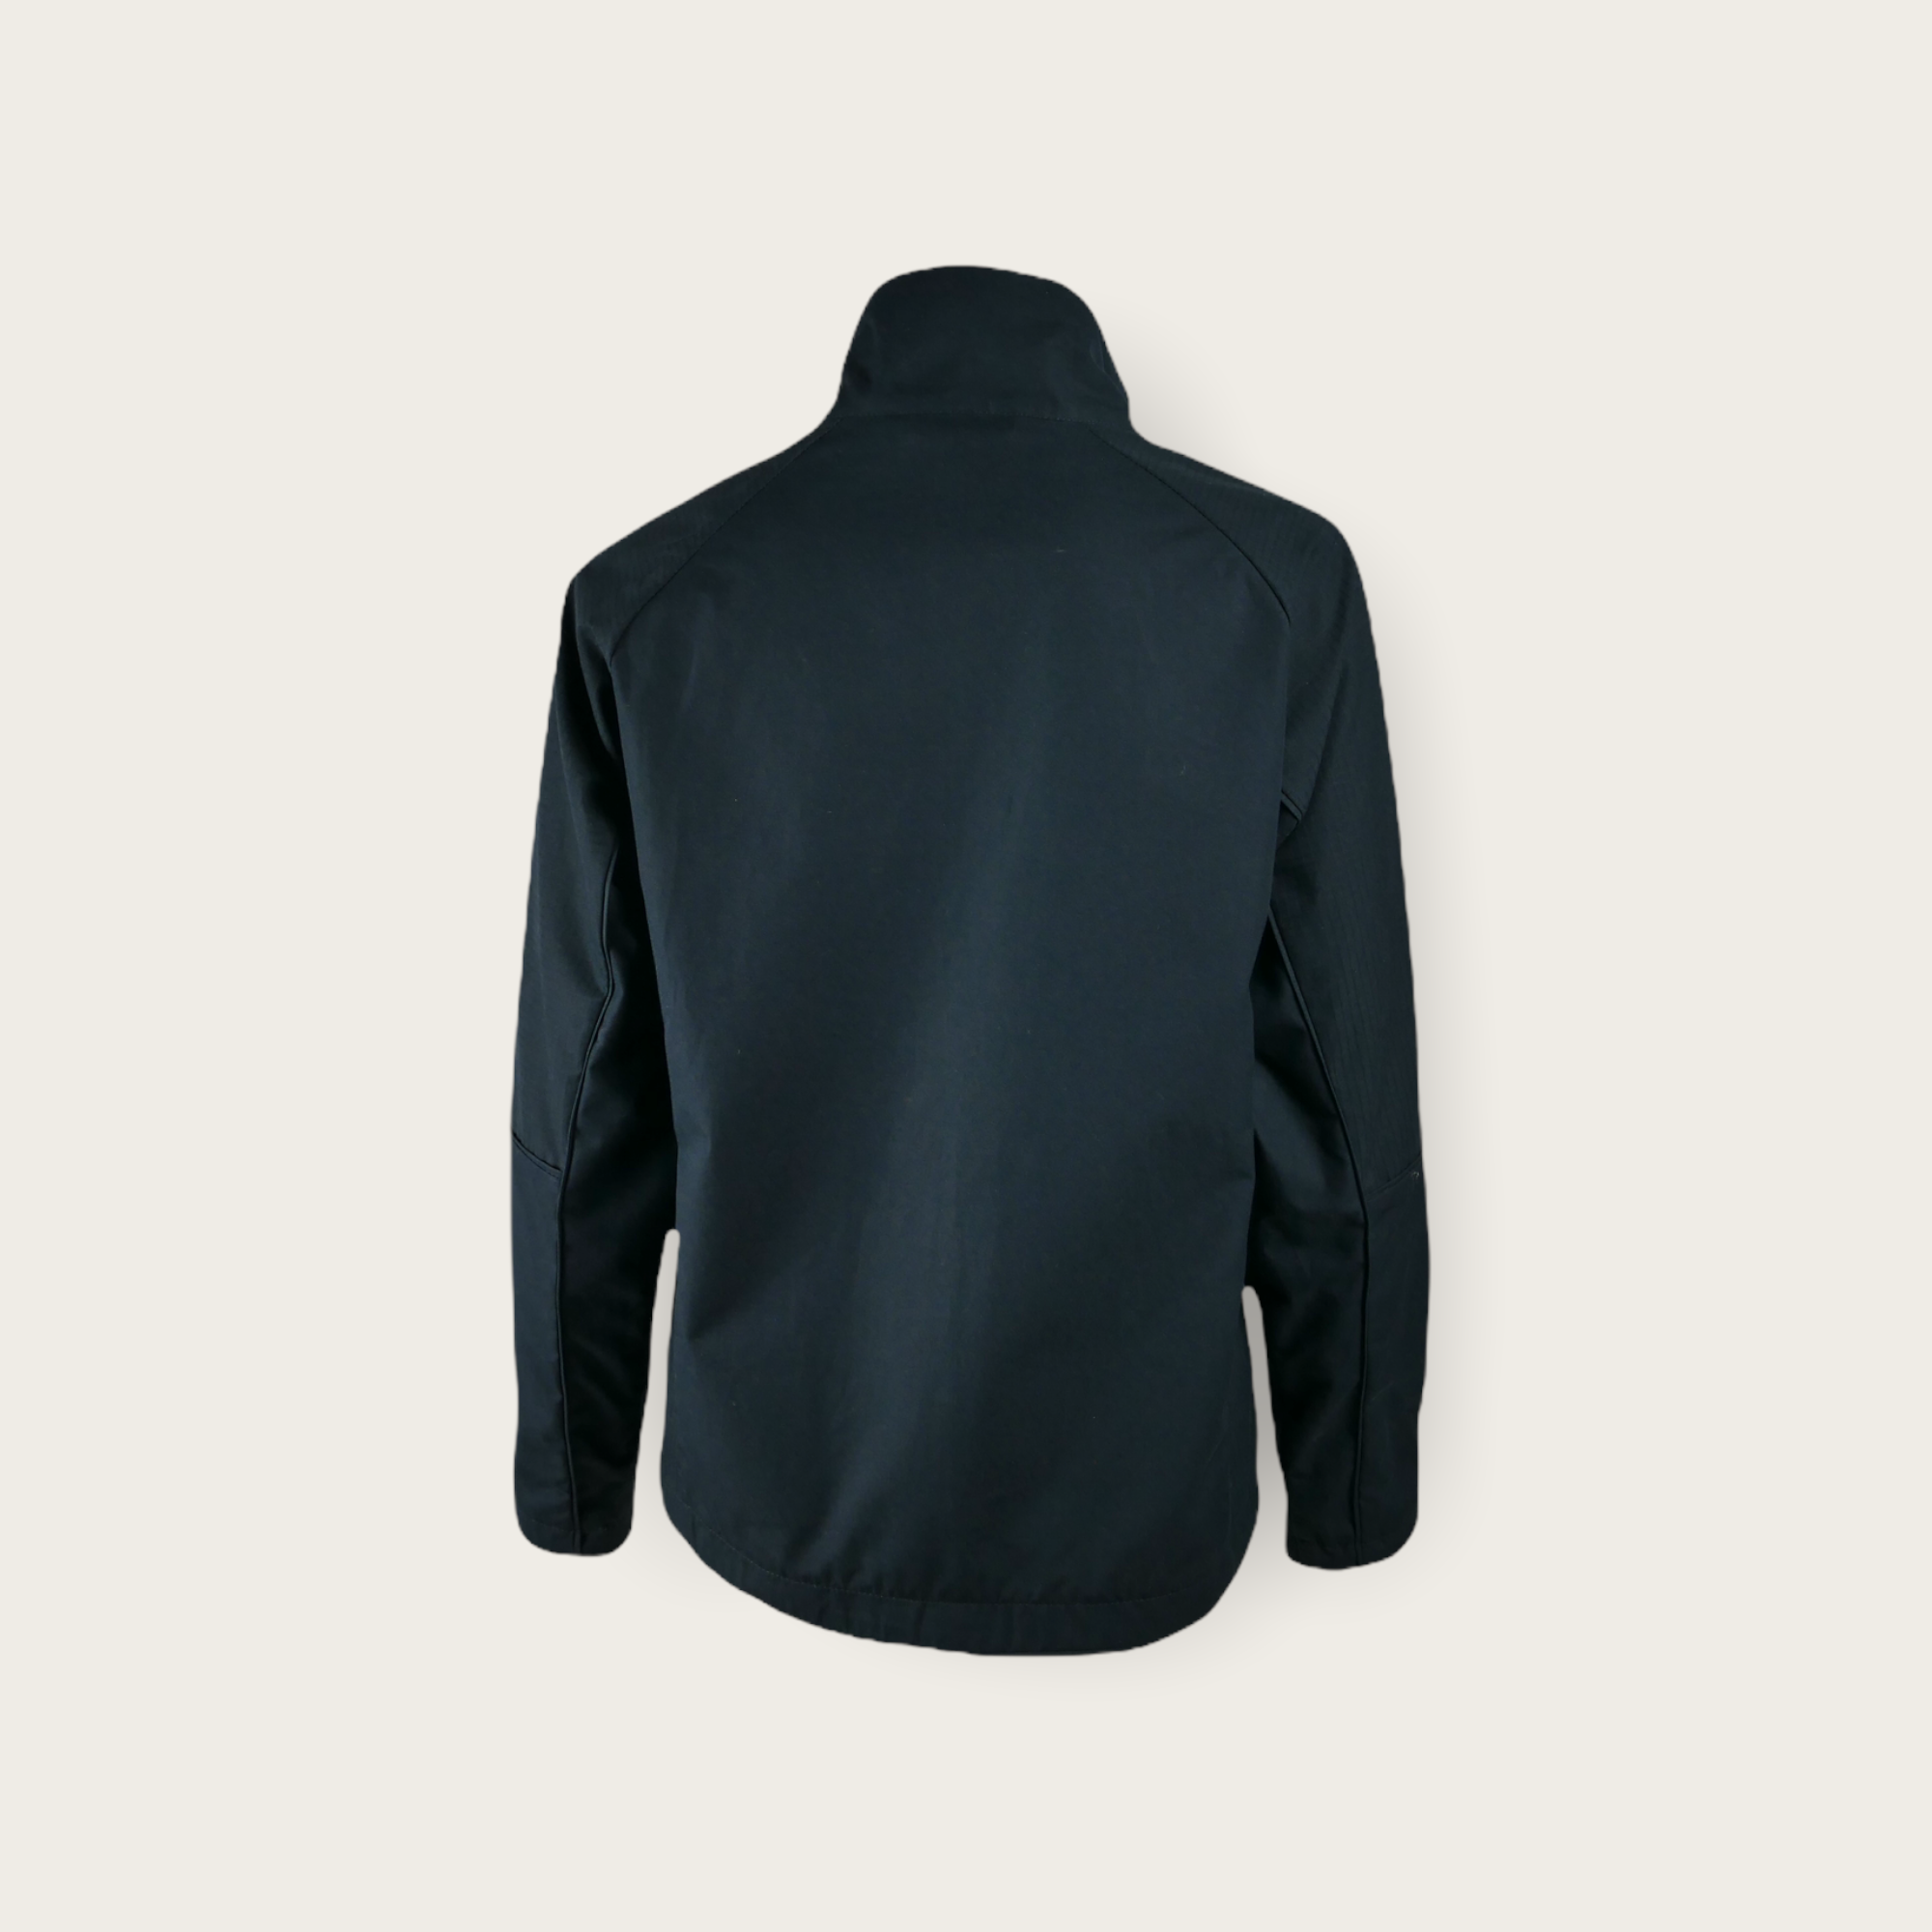 Baseline Shell Jacket Full Zip – Women’s